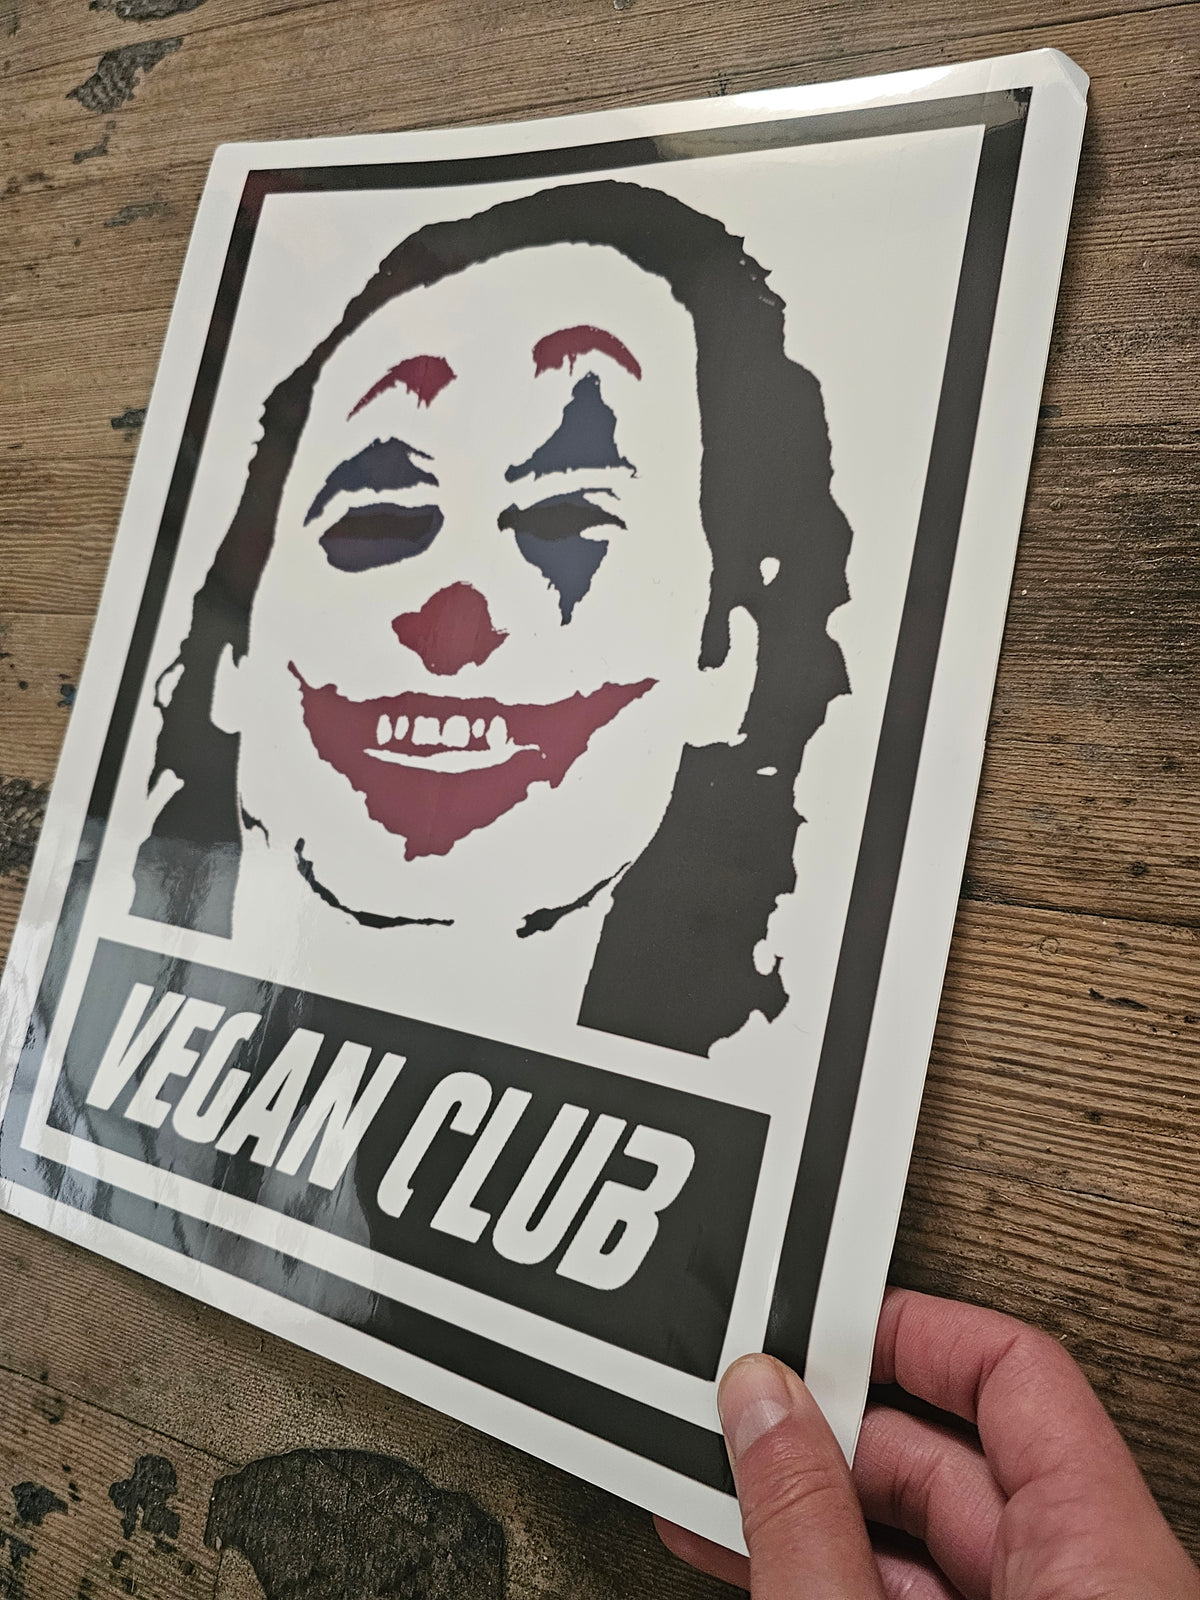 Vegan Club Joker Waterproof Sticker 14x11 - great for Street Art on the Fly!